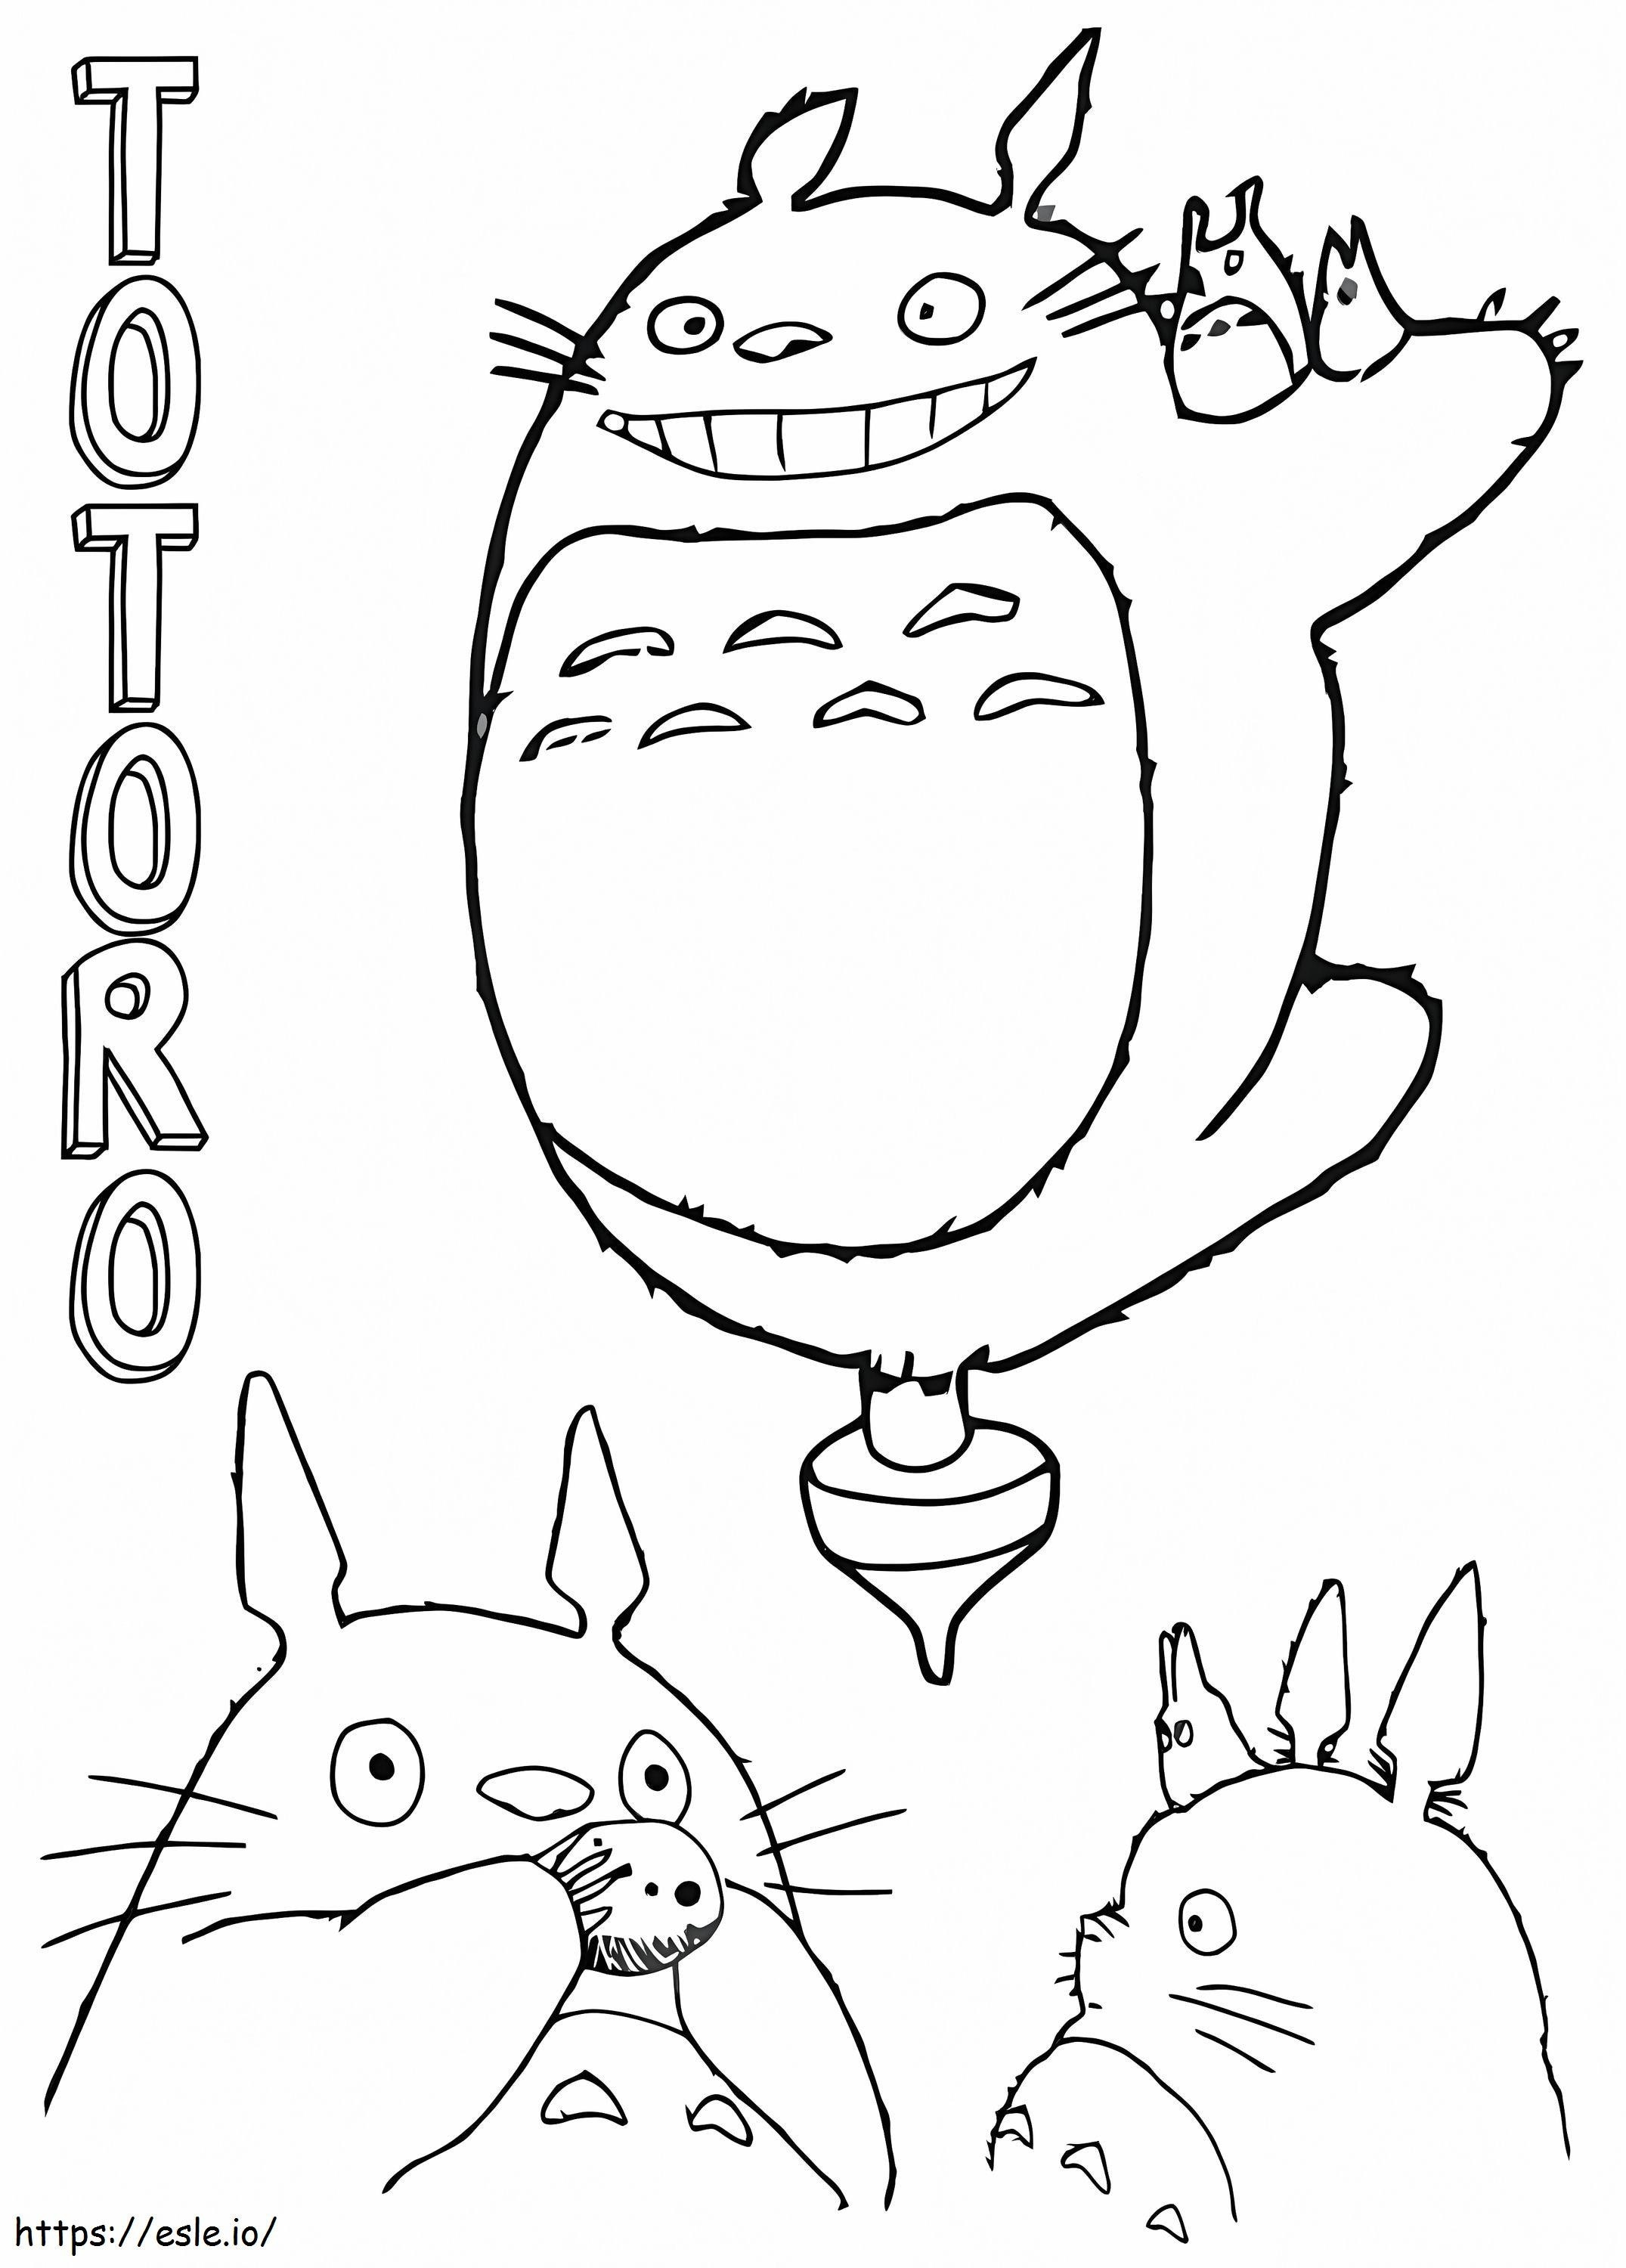 Freundlicher Totoro-Spaß ausmalbilder